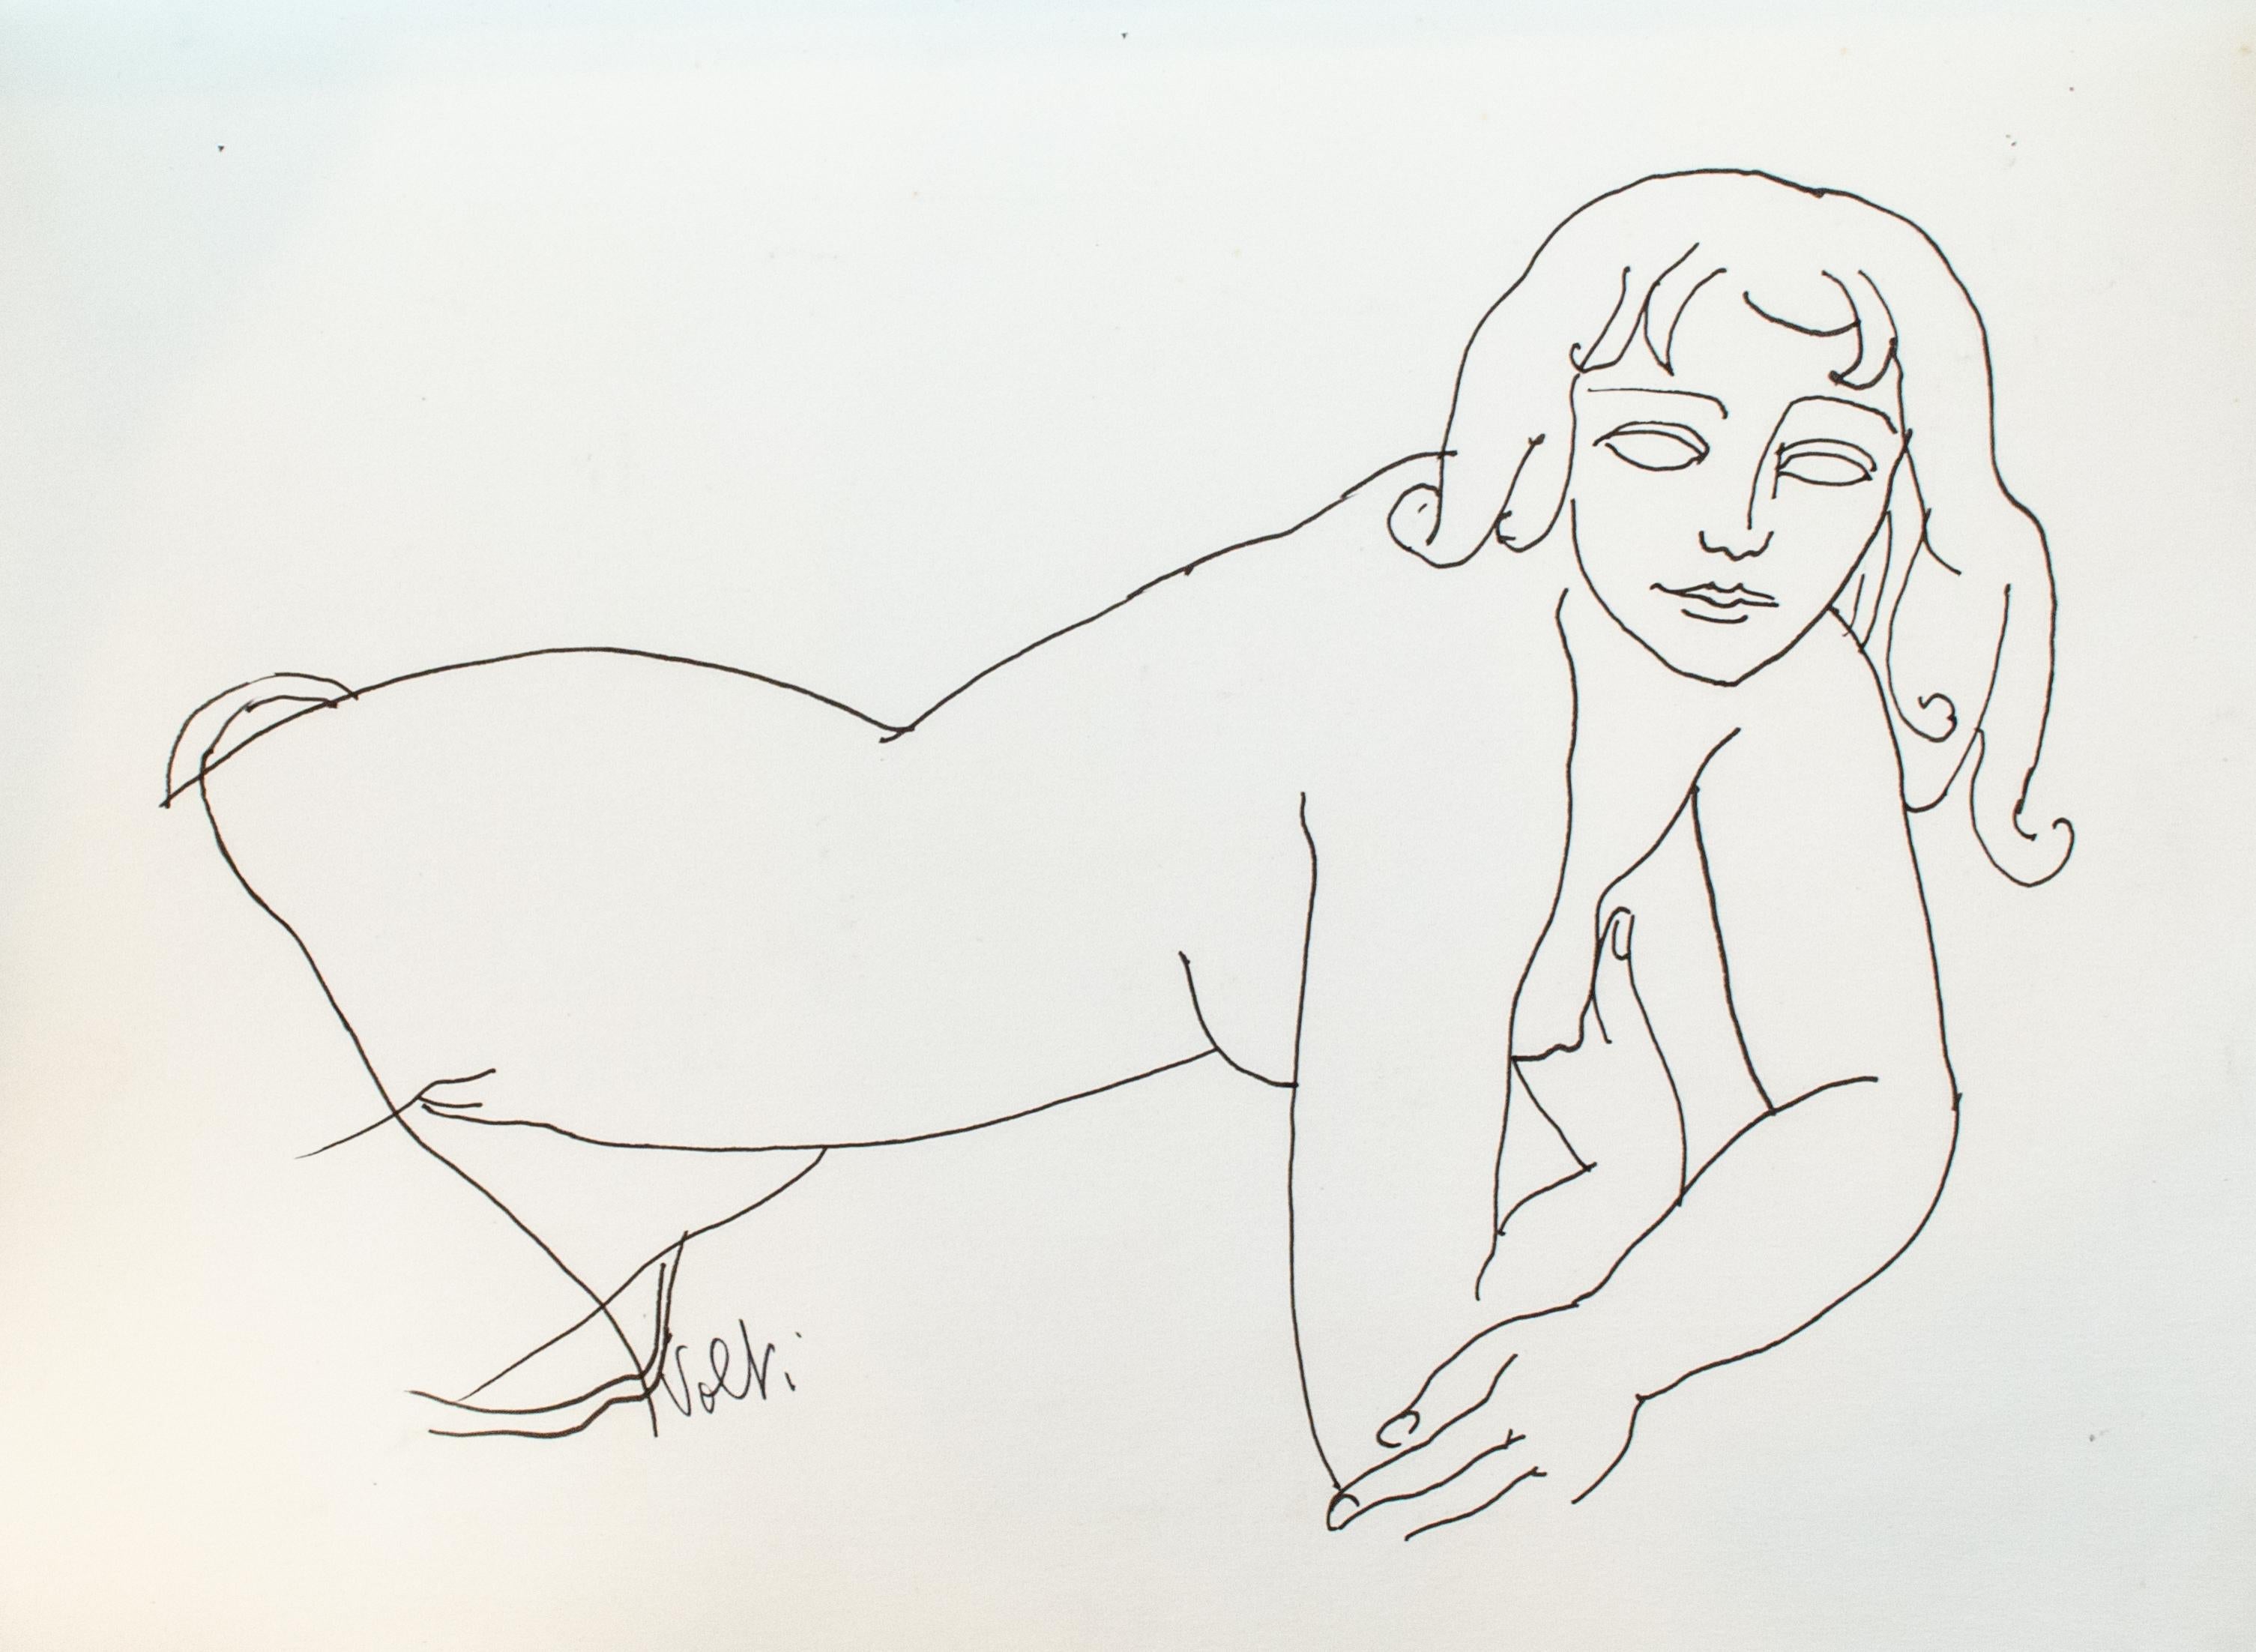 Dessin au trait d'une femme nue par Antoniucci Volti, signé